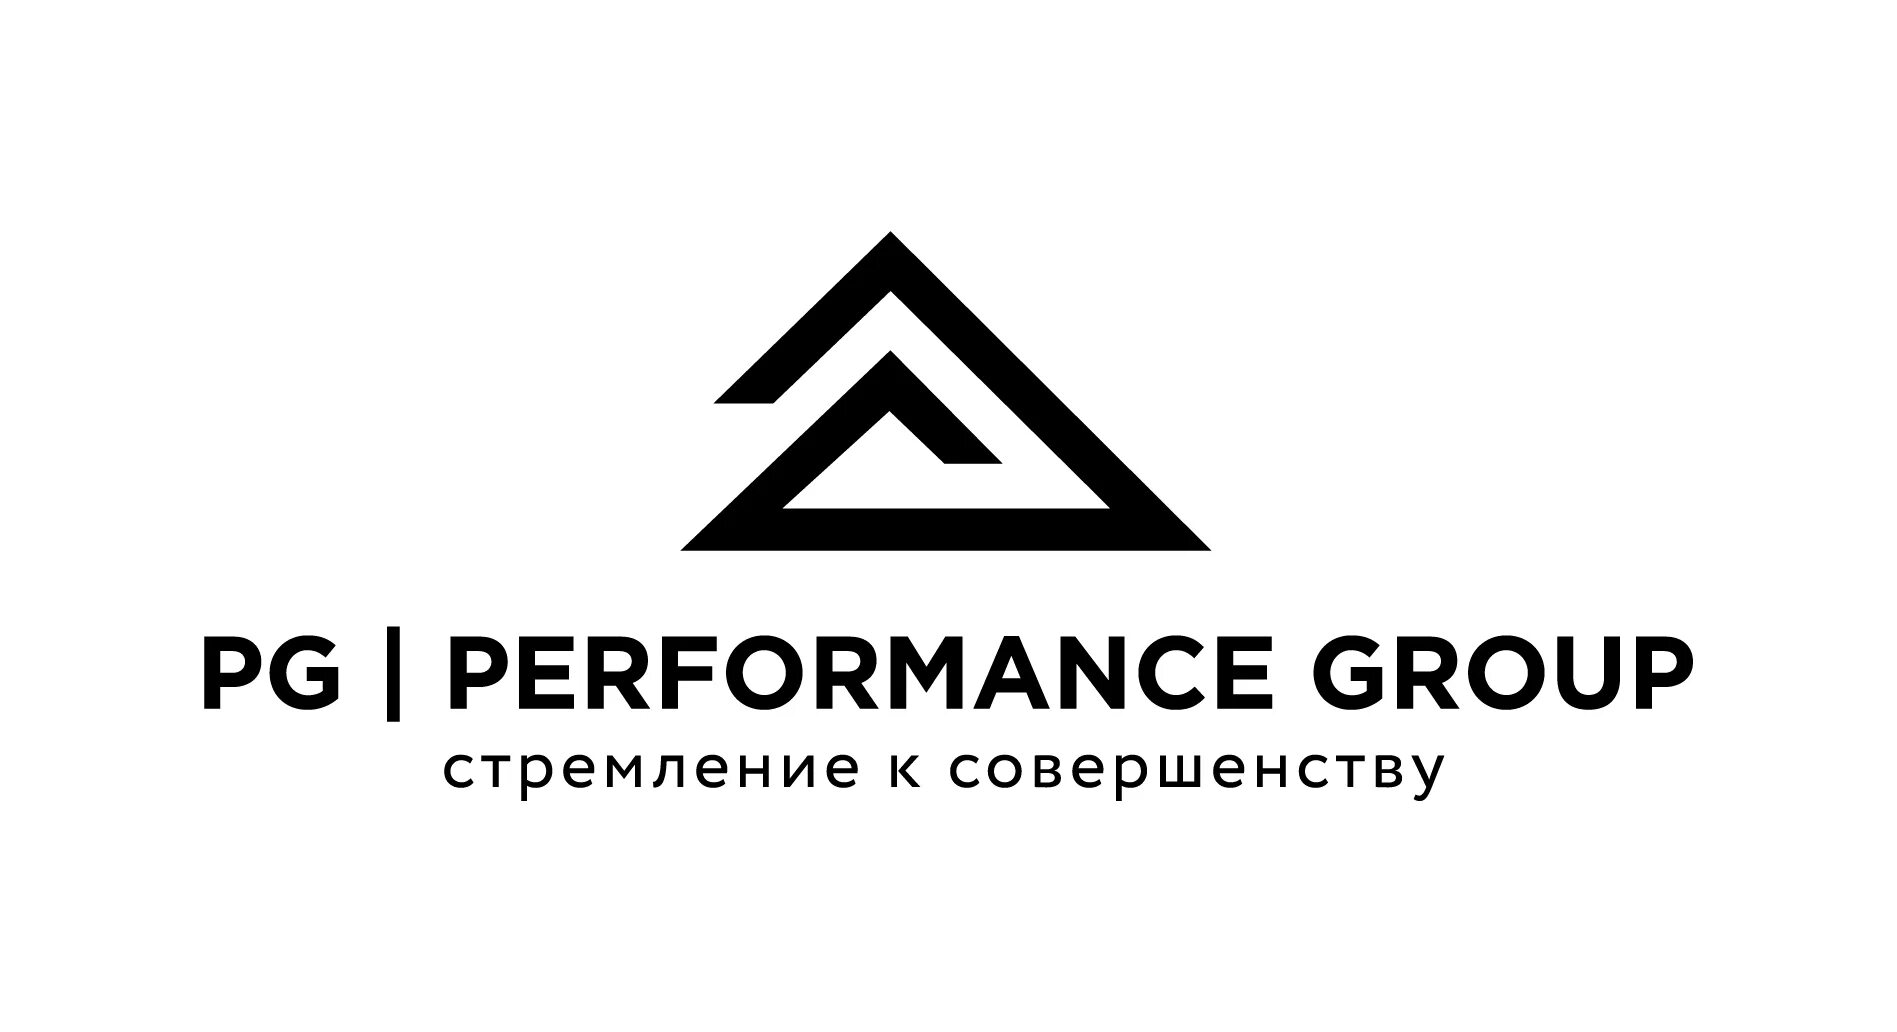 Логотип строительной компании. Group Performance. Group логотип. Перформанс групп. Level group логотип